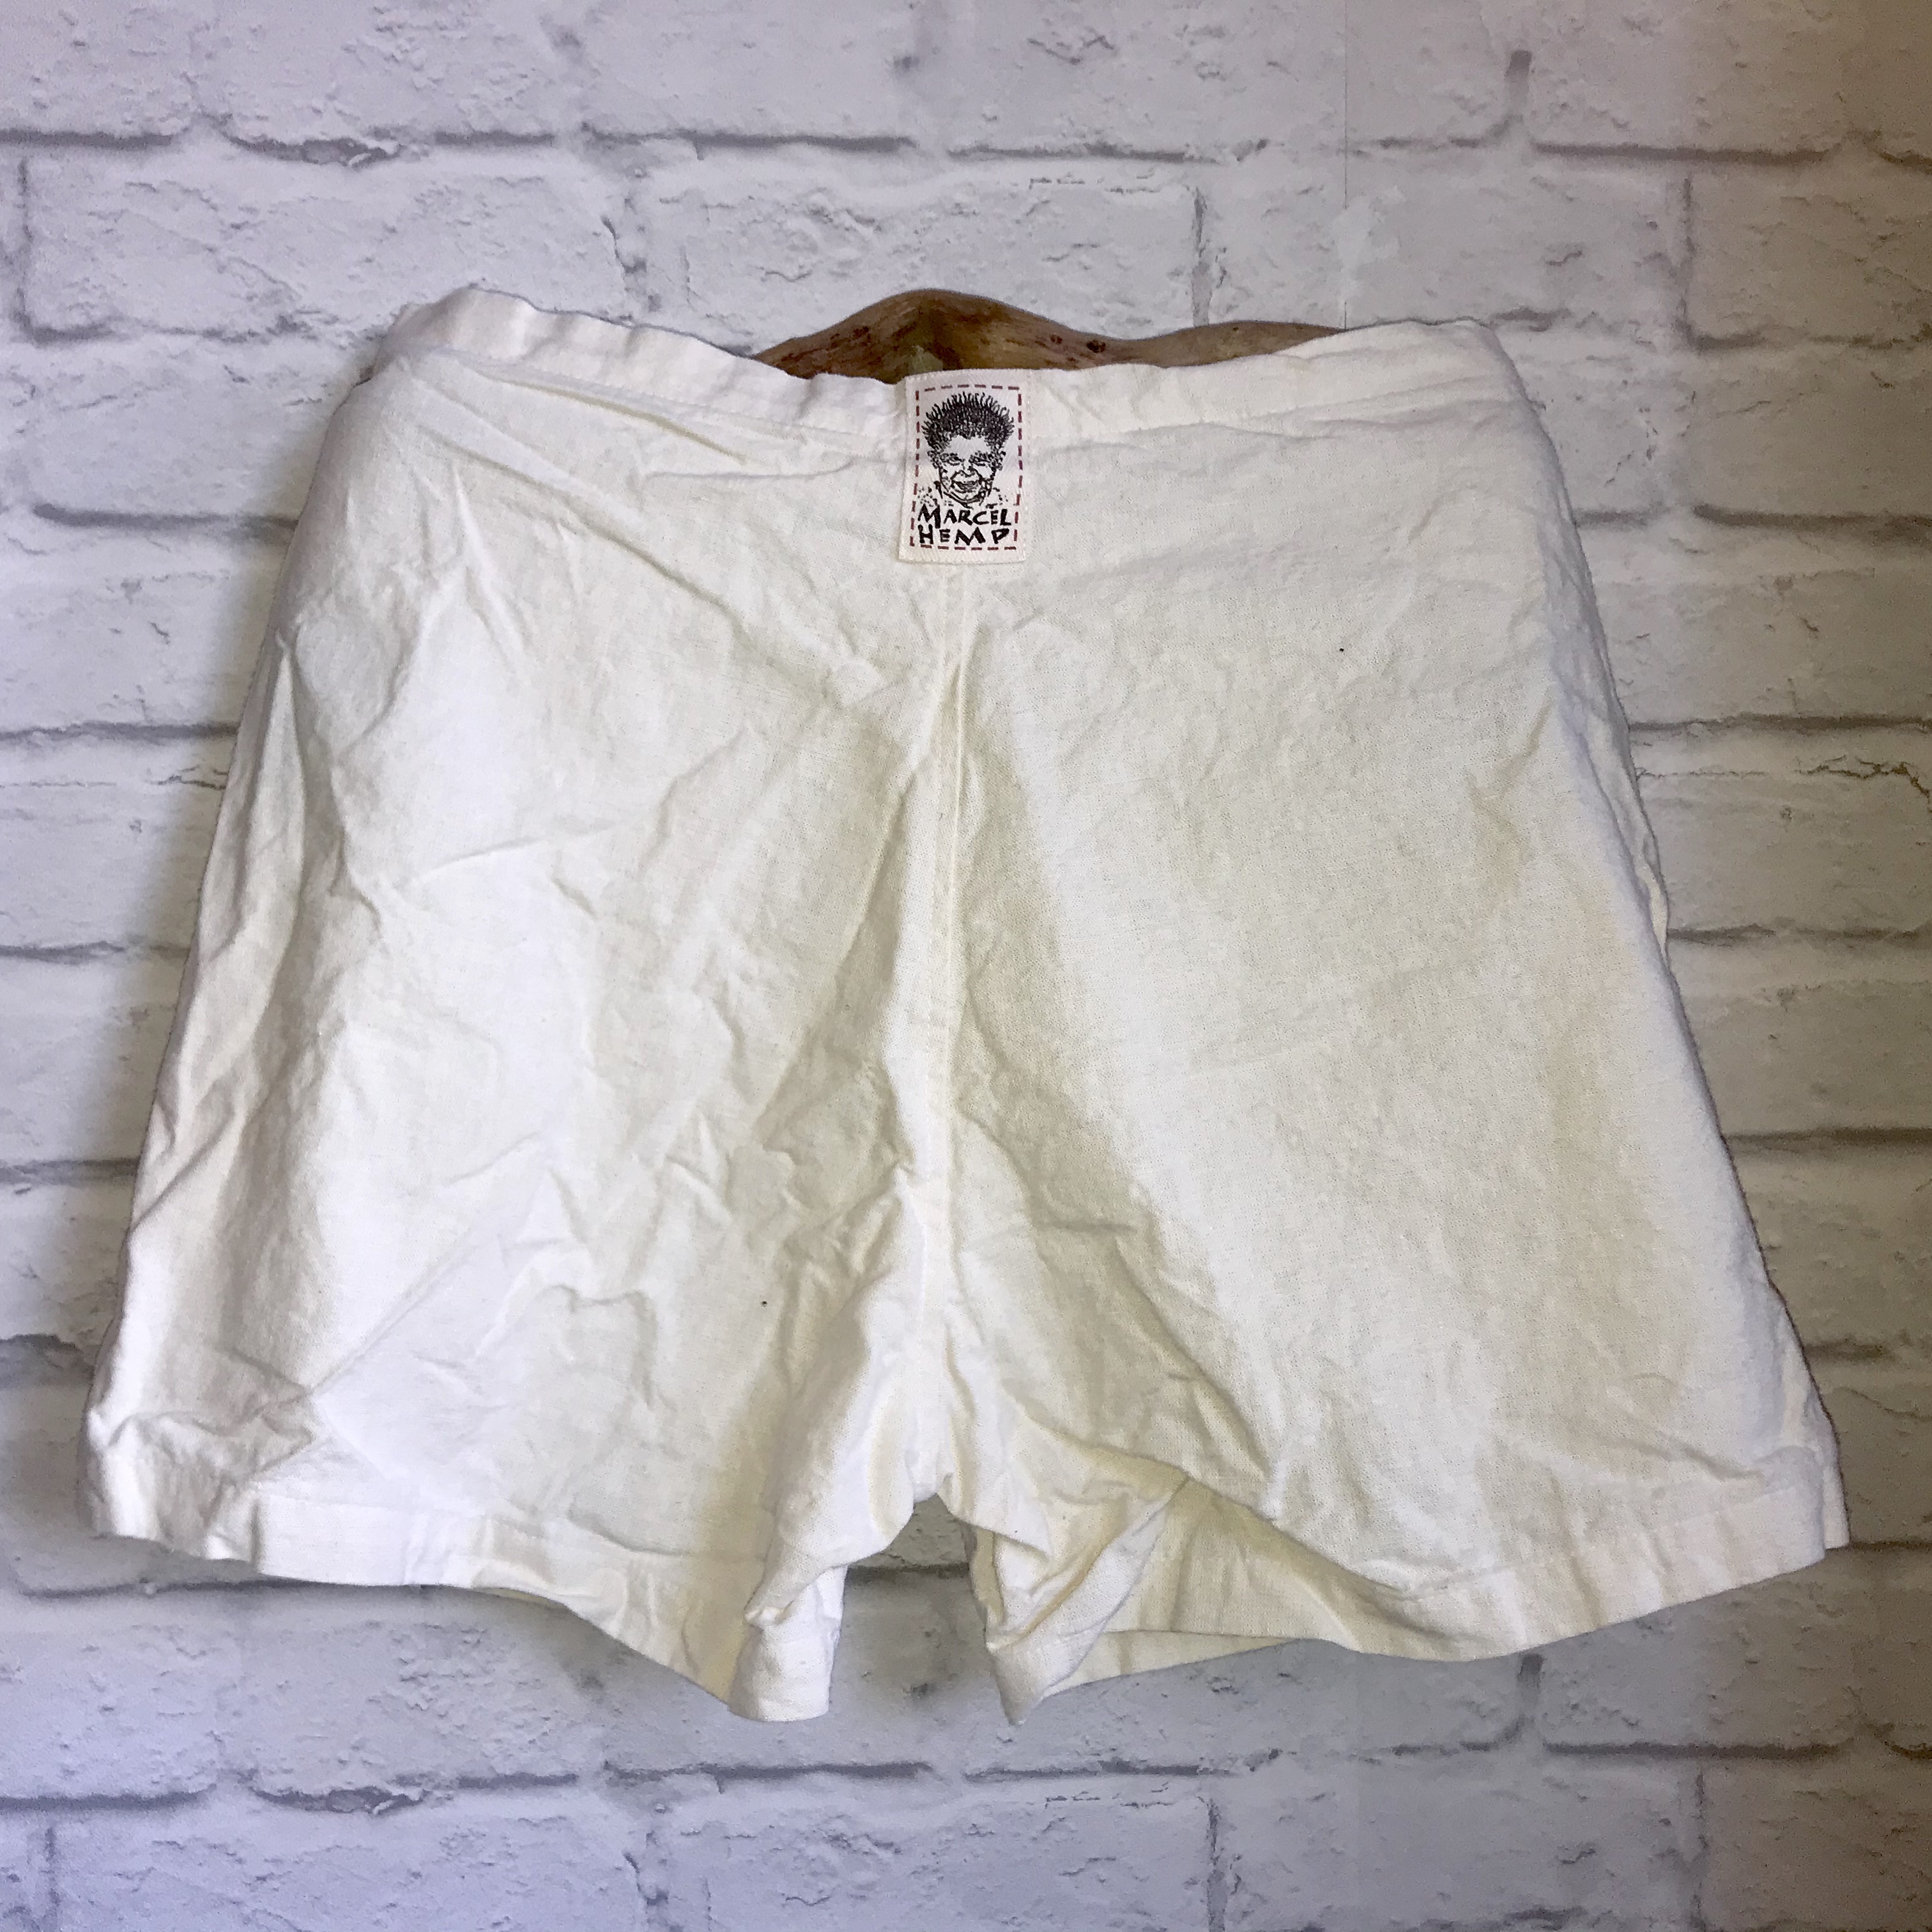 hemp shorts